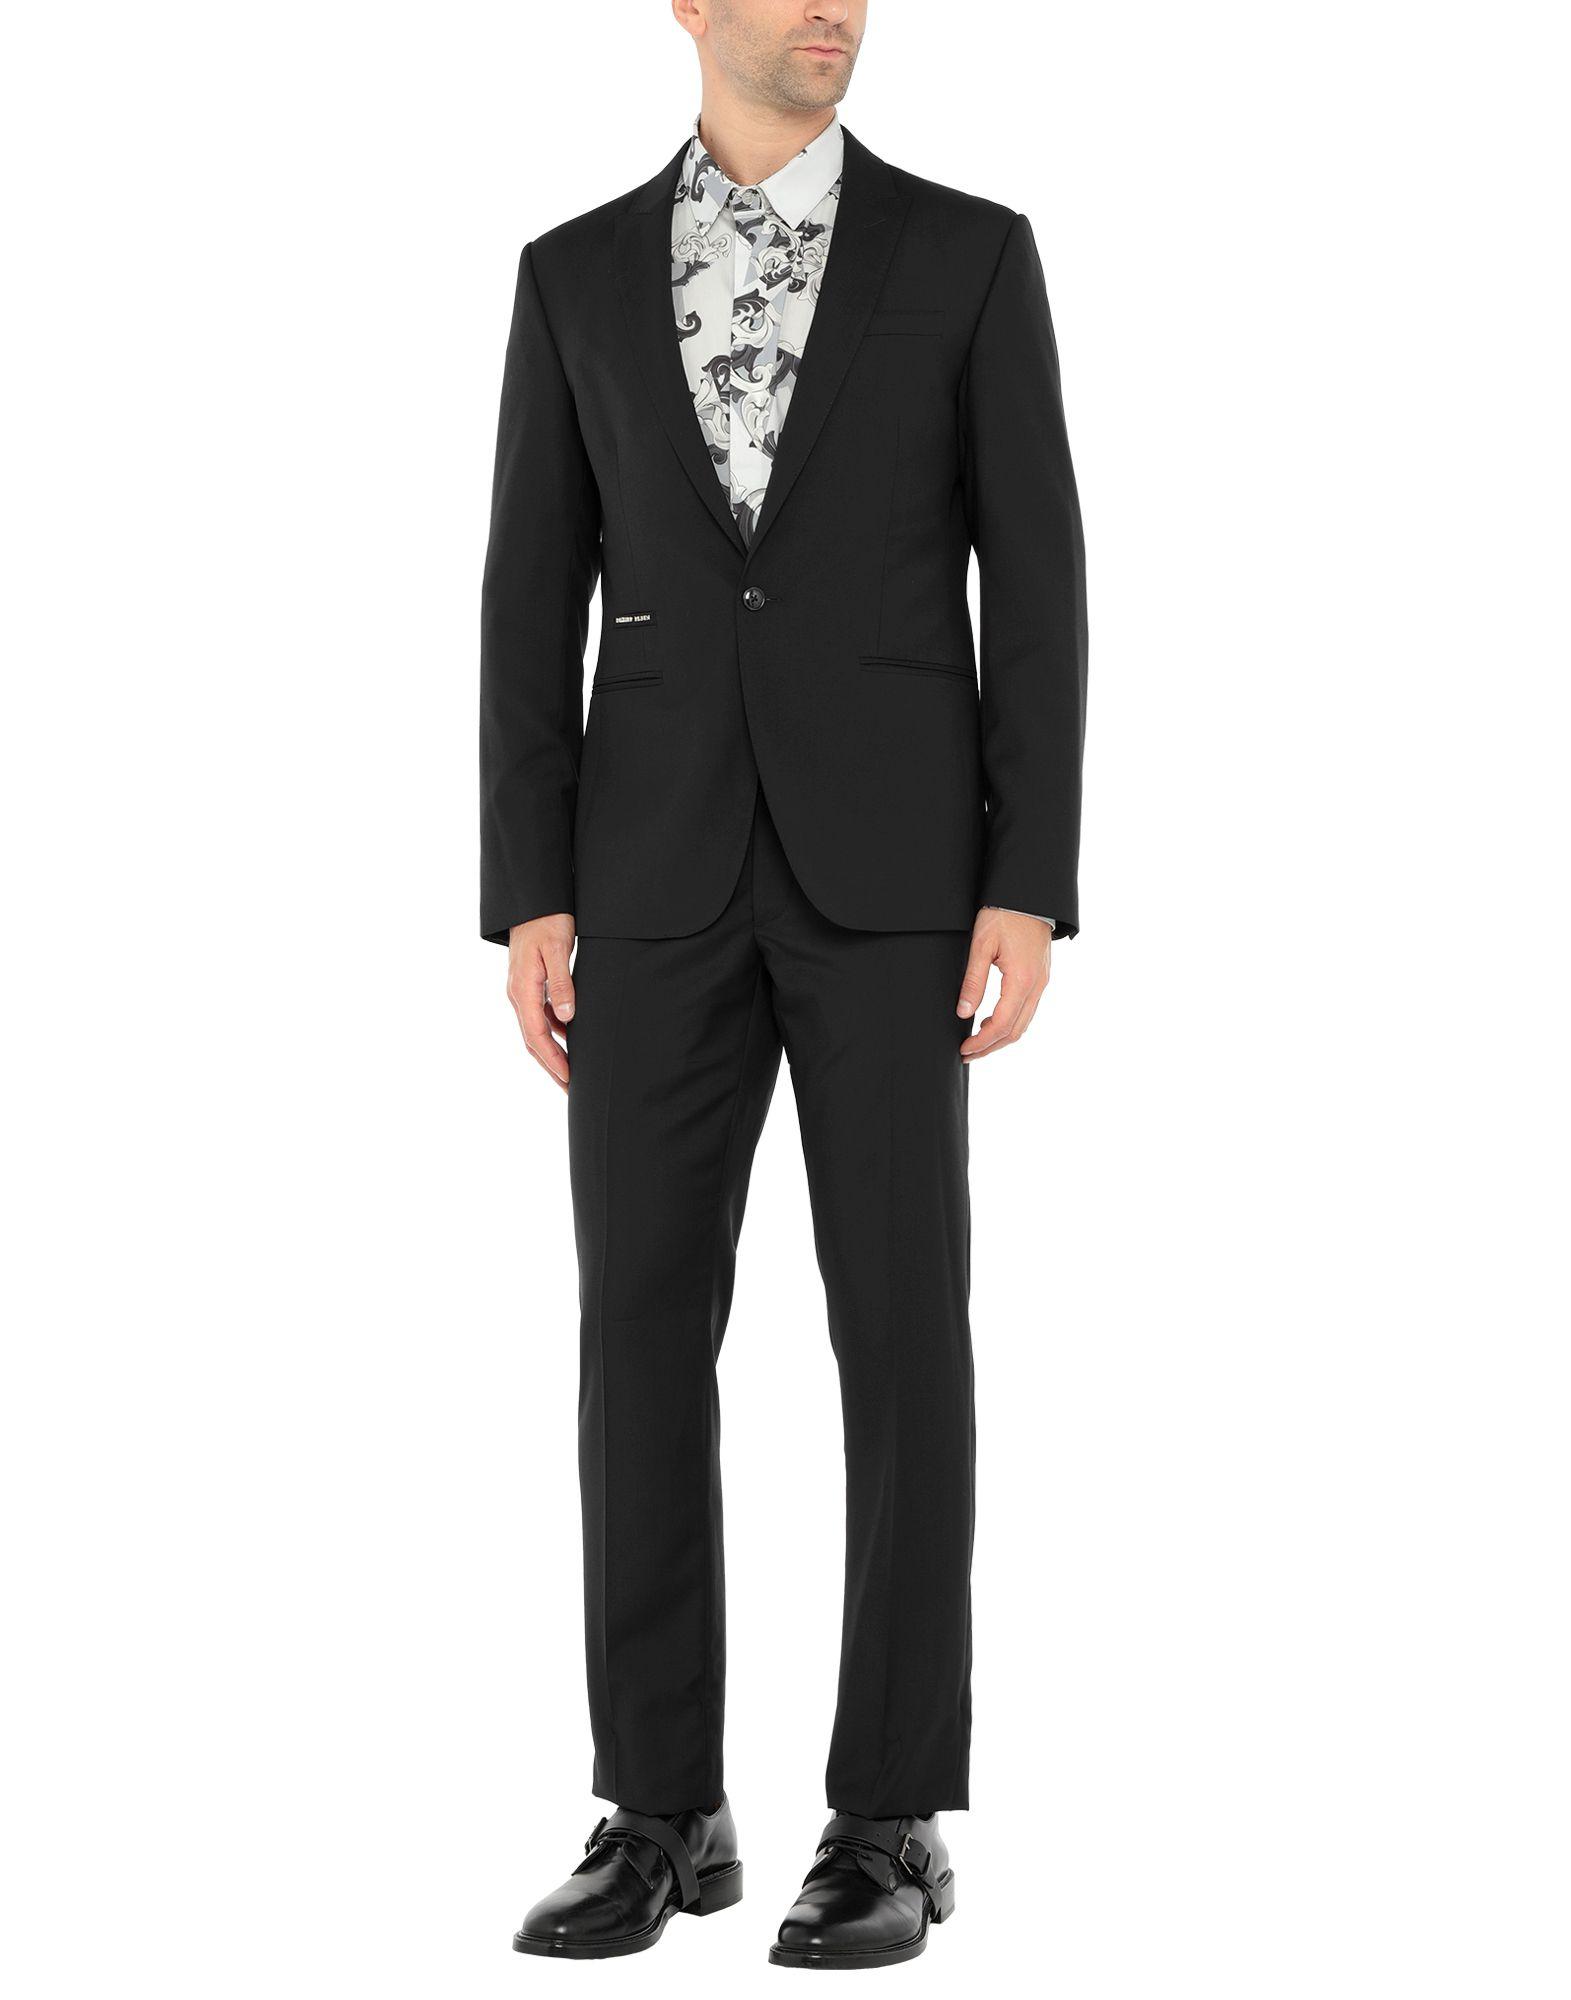 Philipp Plein Suit in Black for Men - Lyst